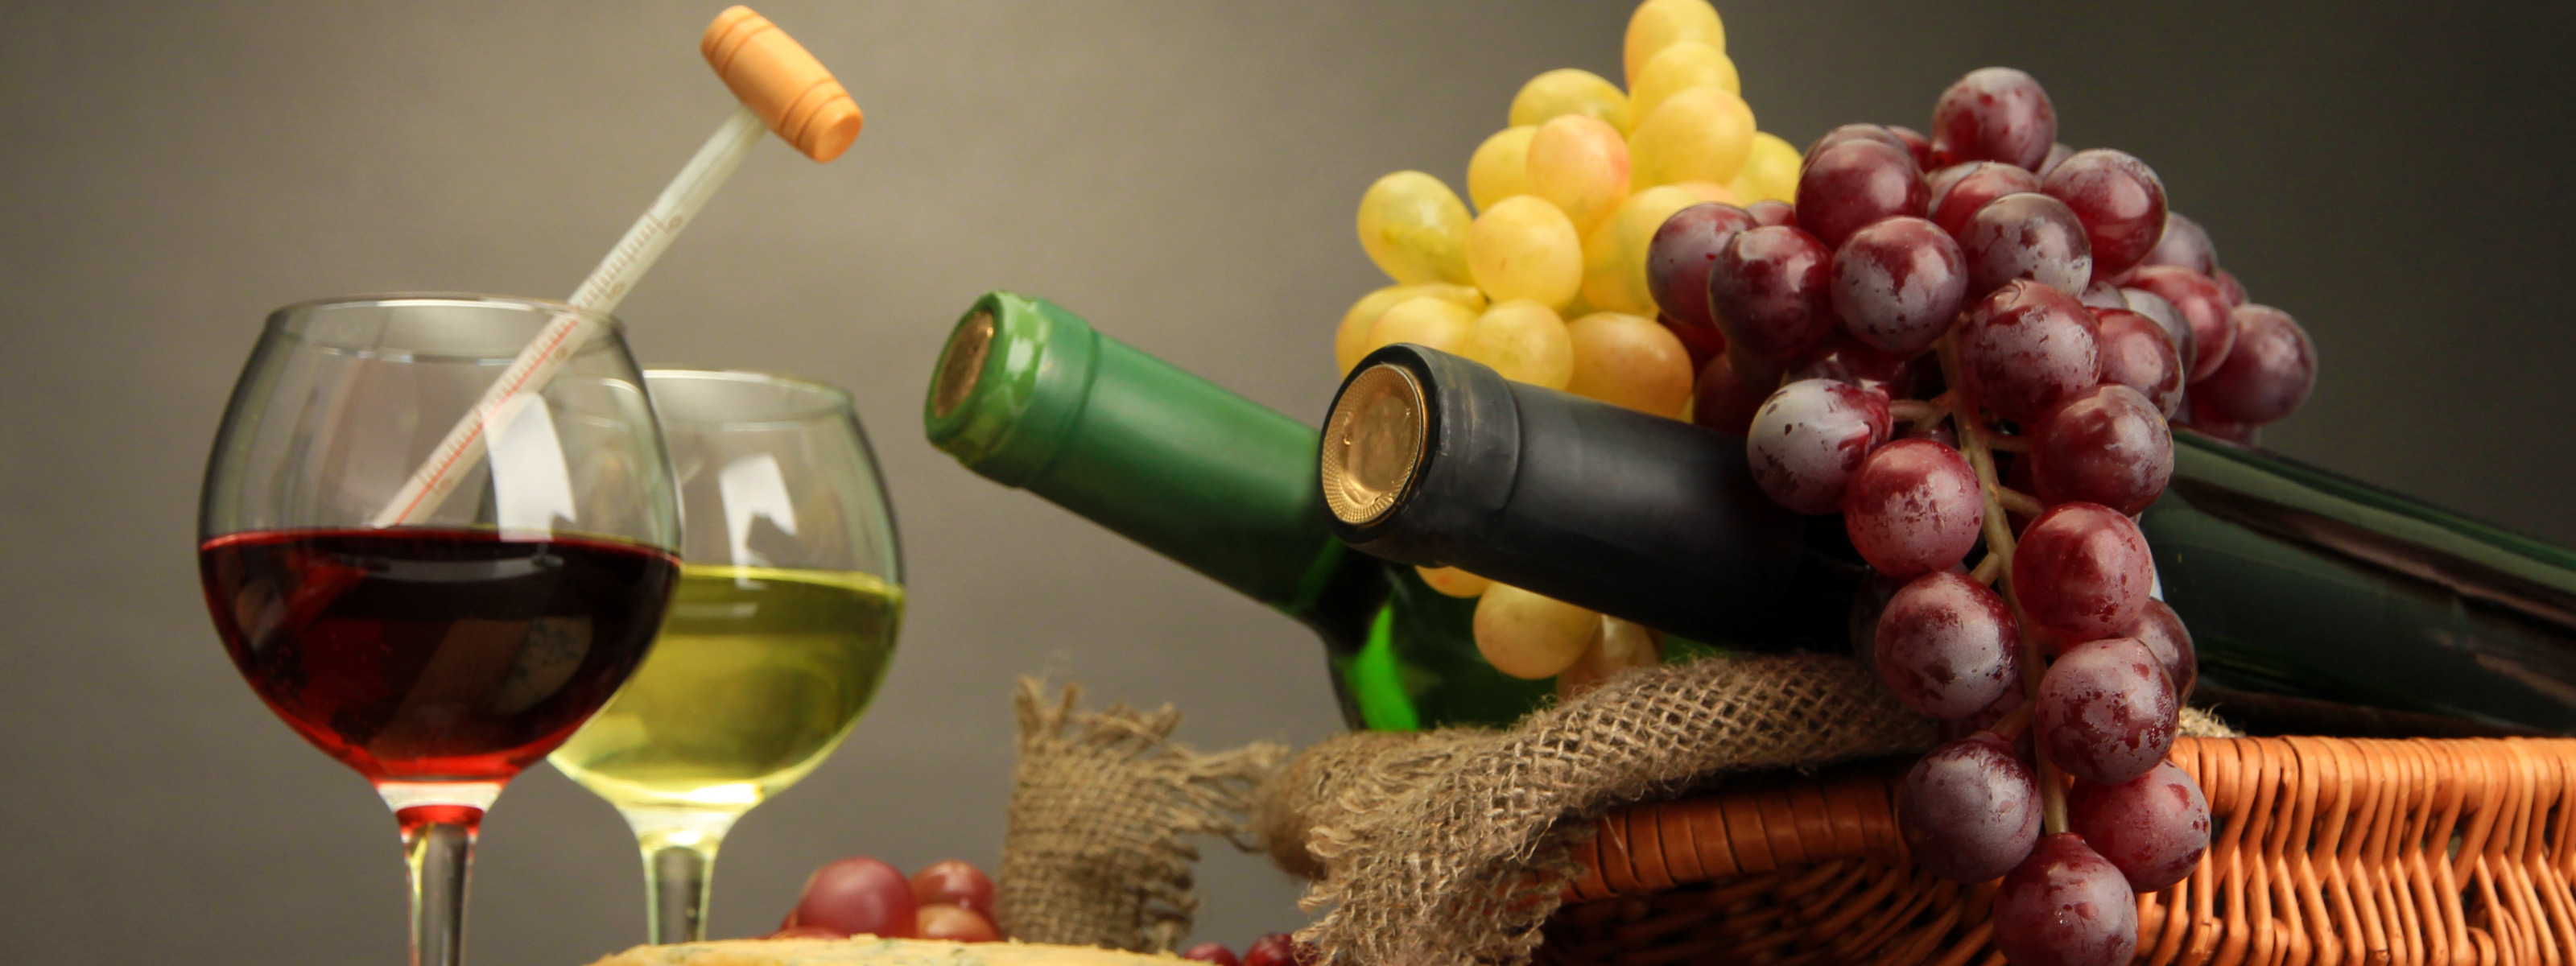 Вина Португалии. Портвейн.бутылка гроздь винограда. Импортное вино в бутылке в виде виноградной грозди. Виноградная гроздь вино в коробке.